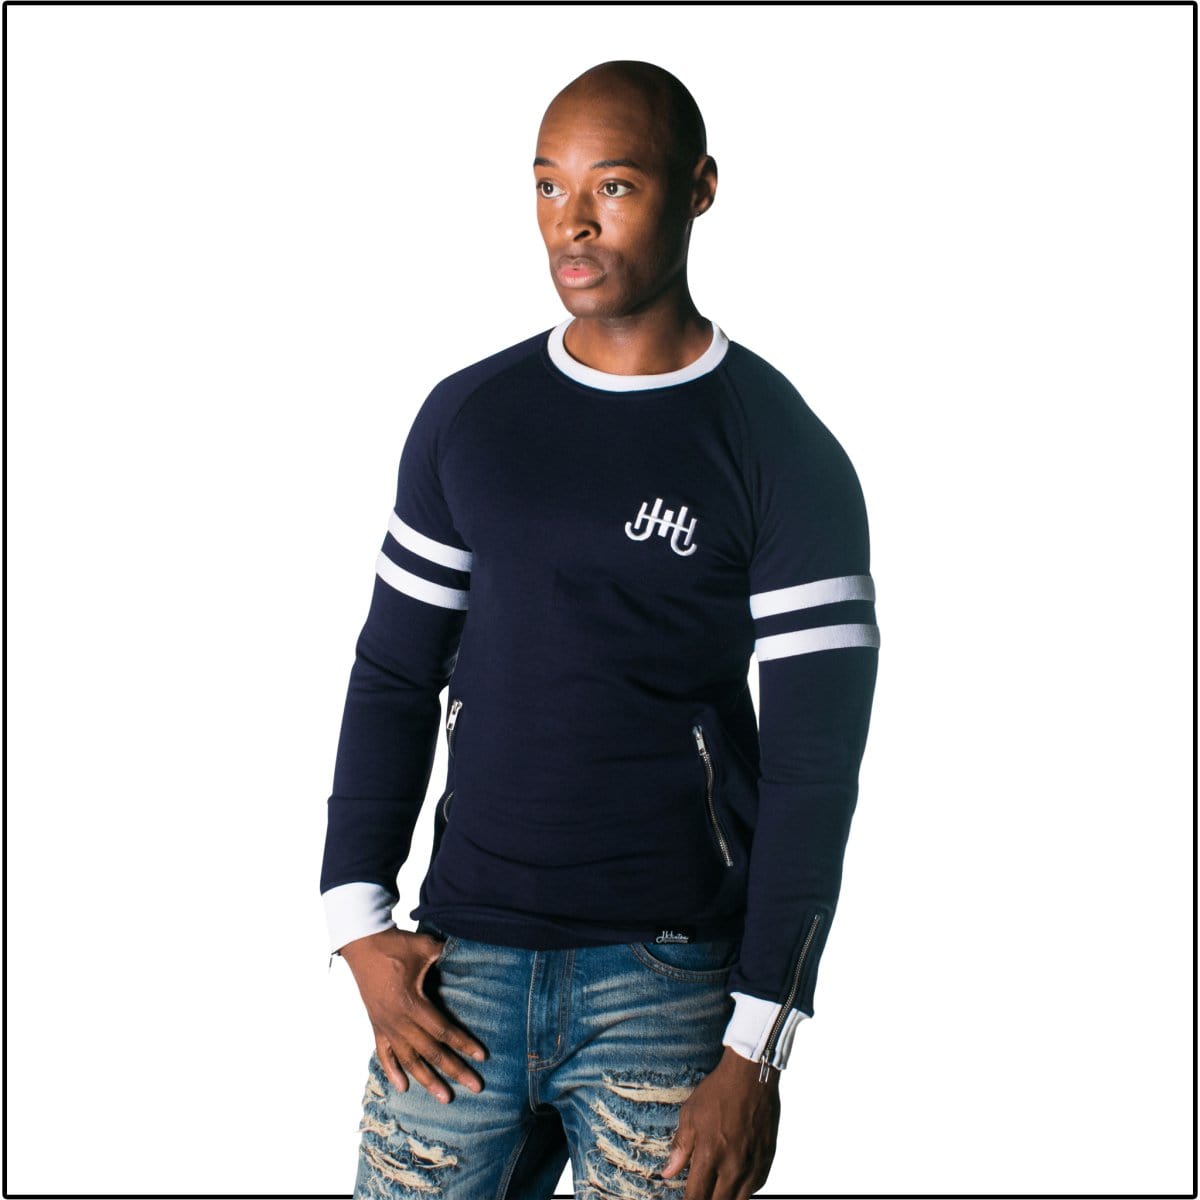 Men's Cotton Sweatshirt with Contrast Sleeves"